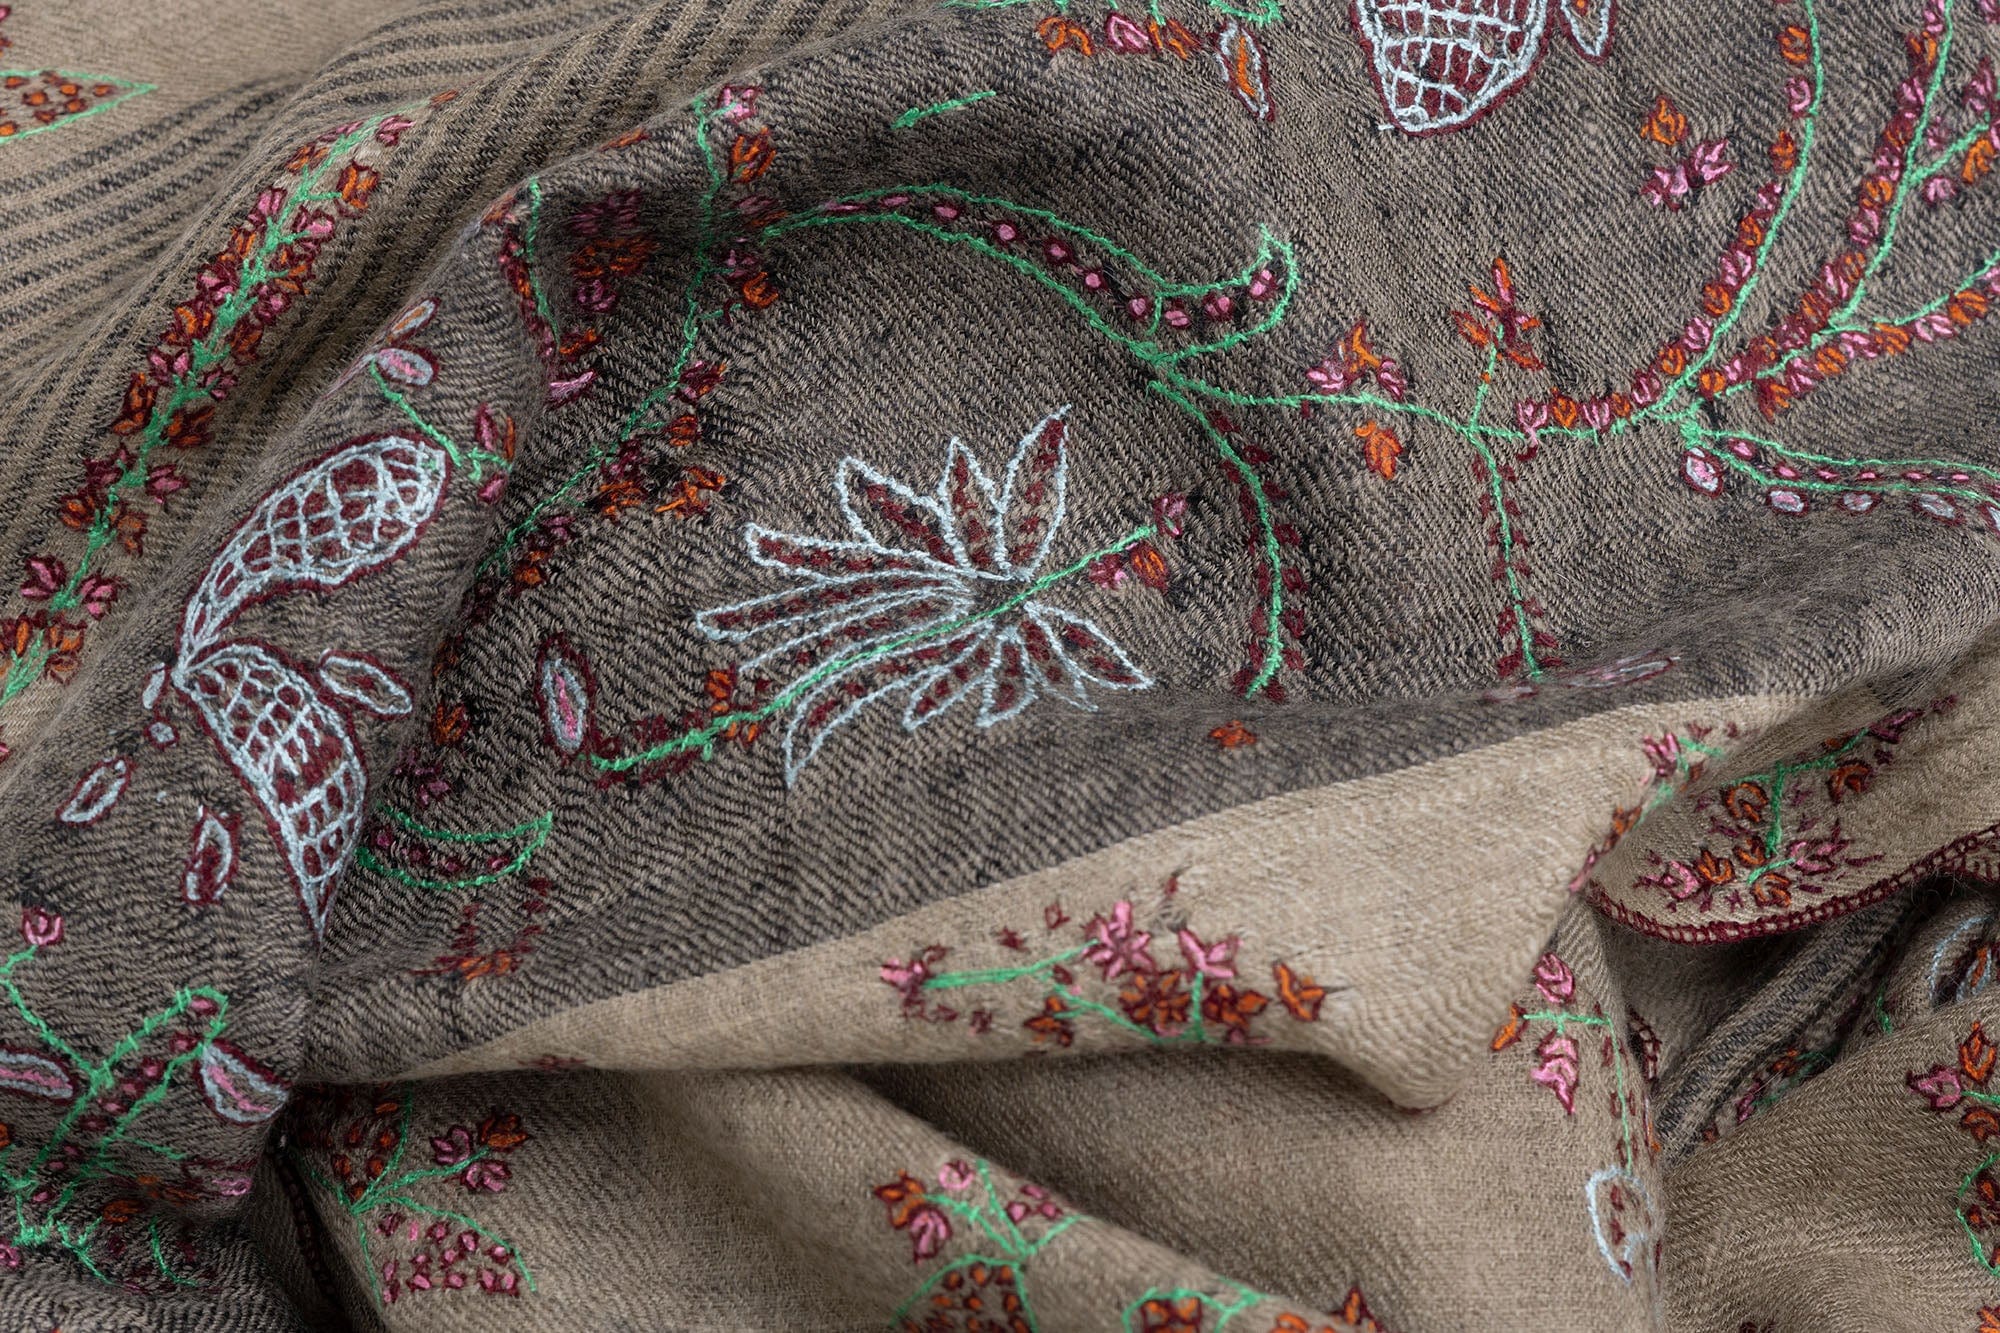 Pashmina shawl detail